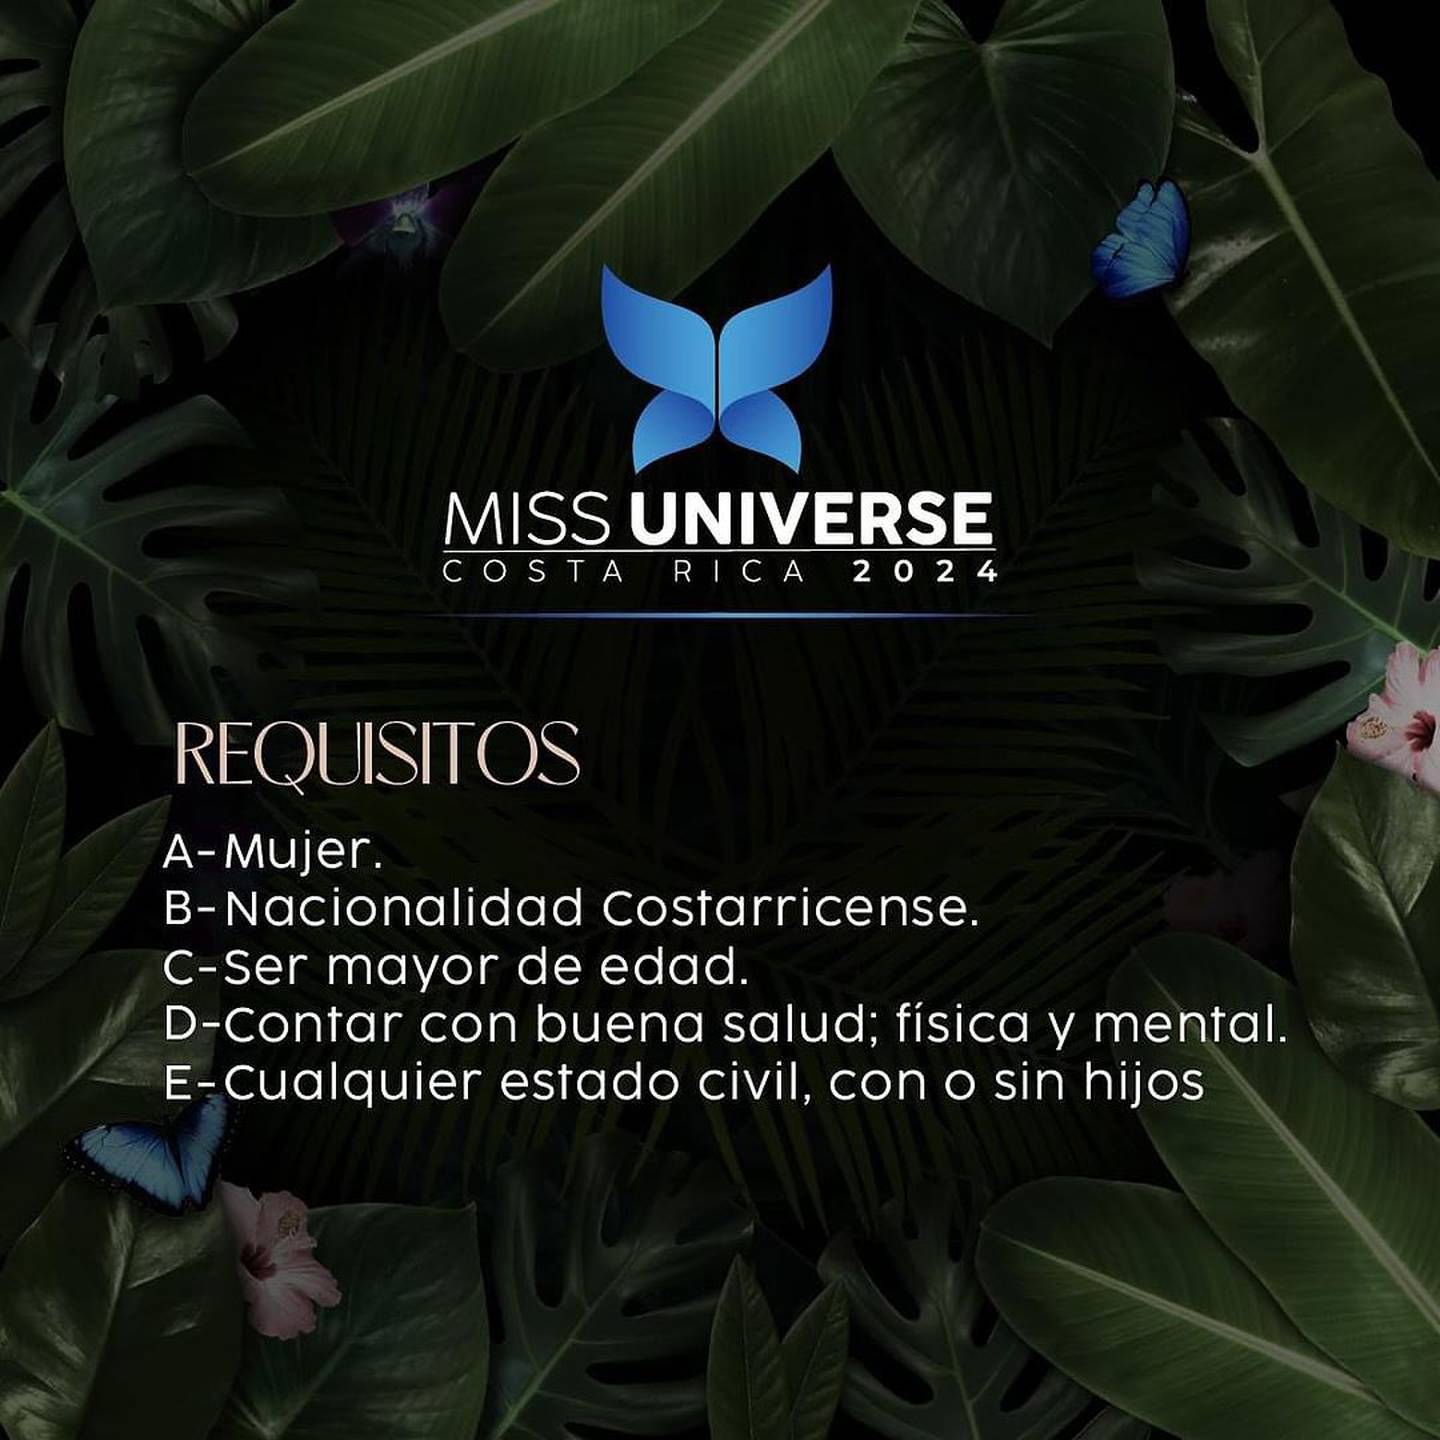 Requisitos para Miss Universe 2024 de parte de la organización de ¡Opa!.